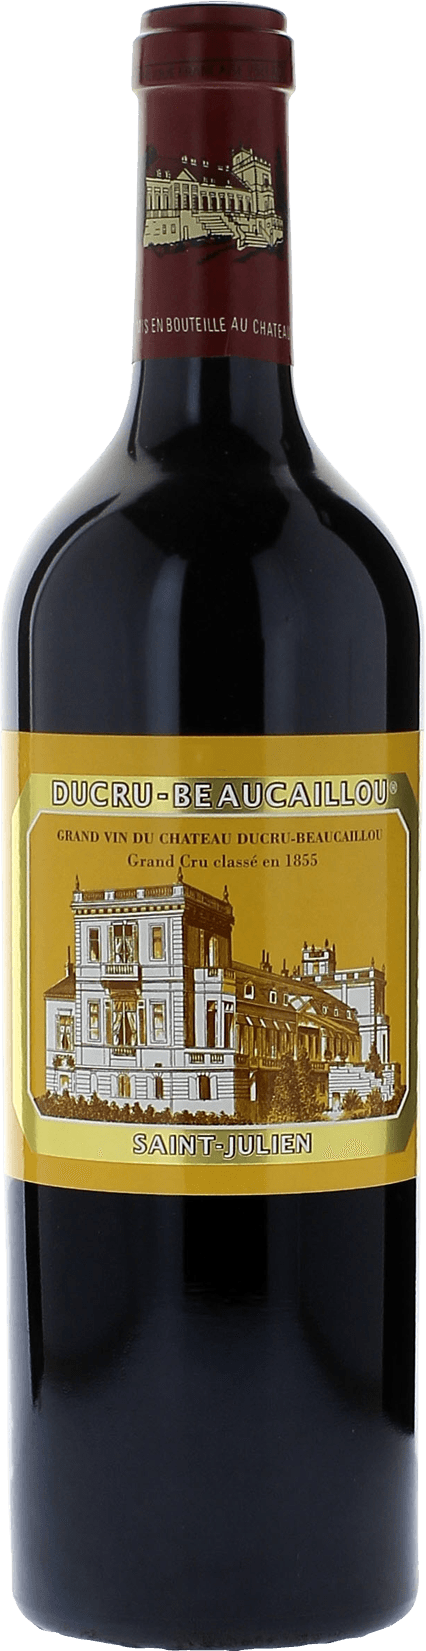 Ducru beaucaillou 2017 2me Grand cru class Saint-Julien, Bordeaux rouge